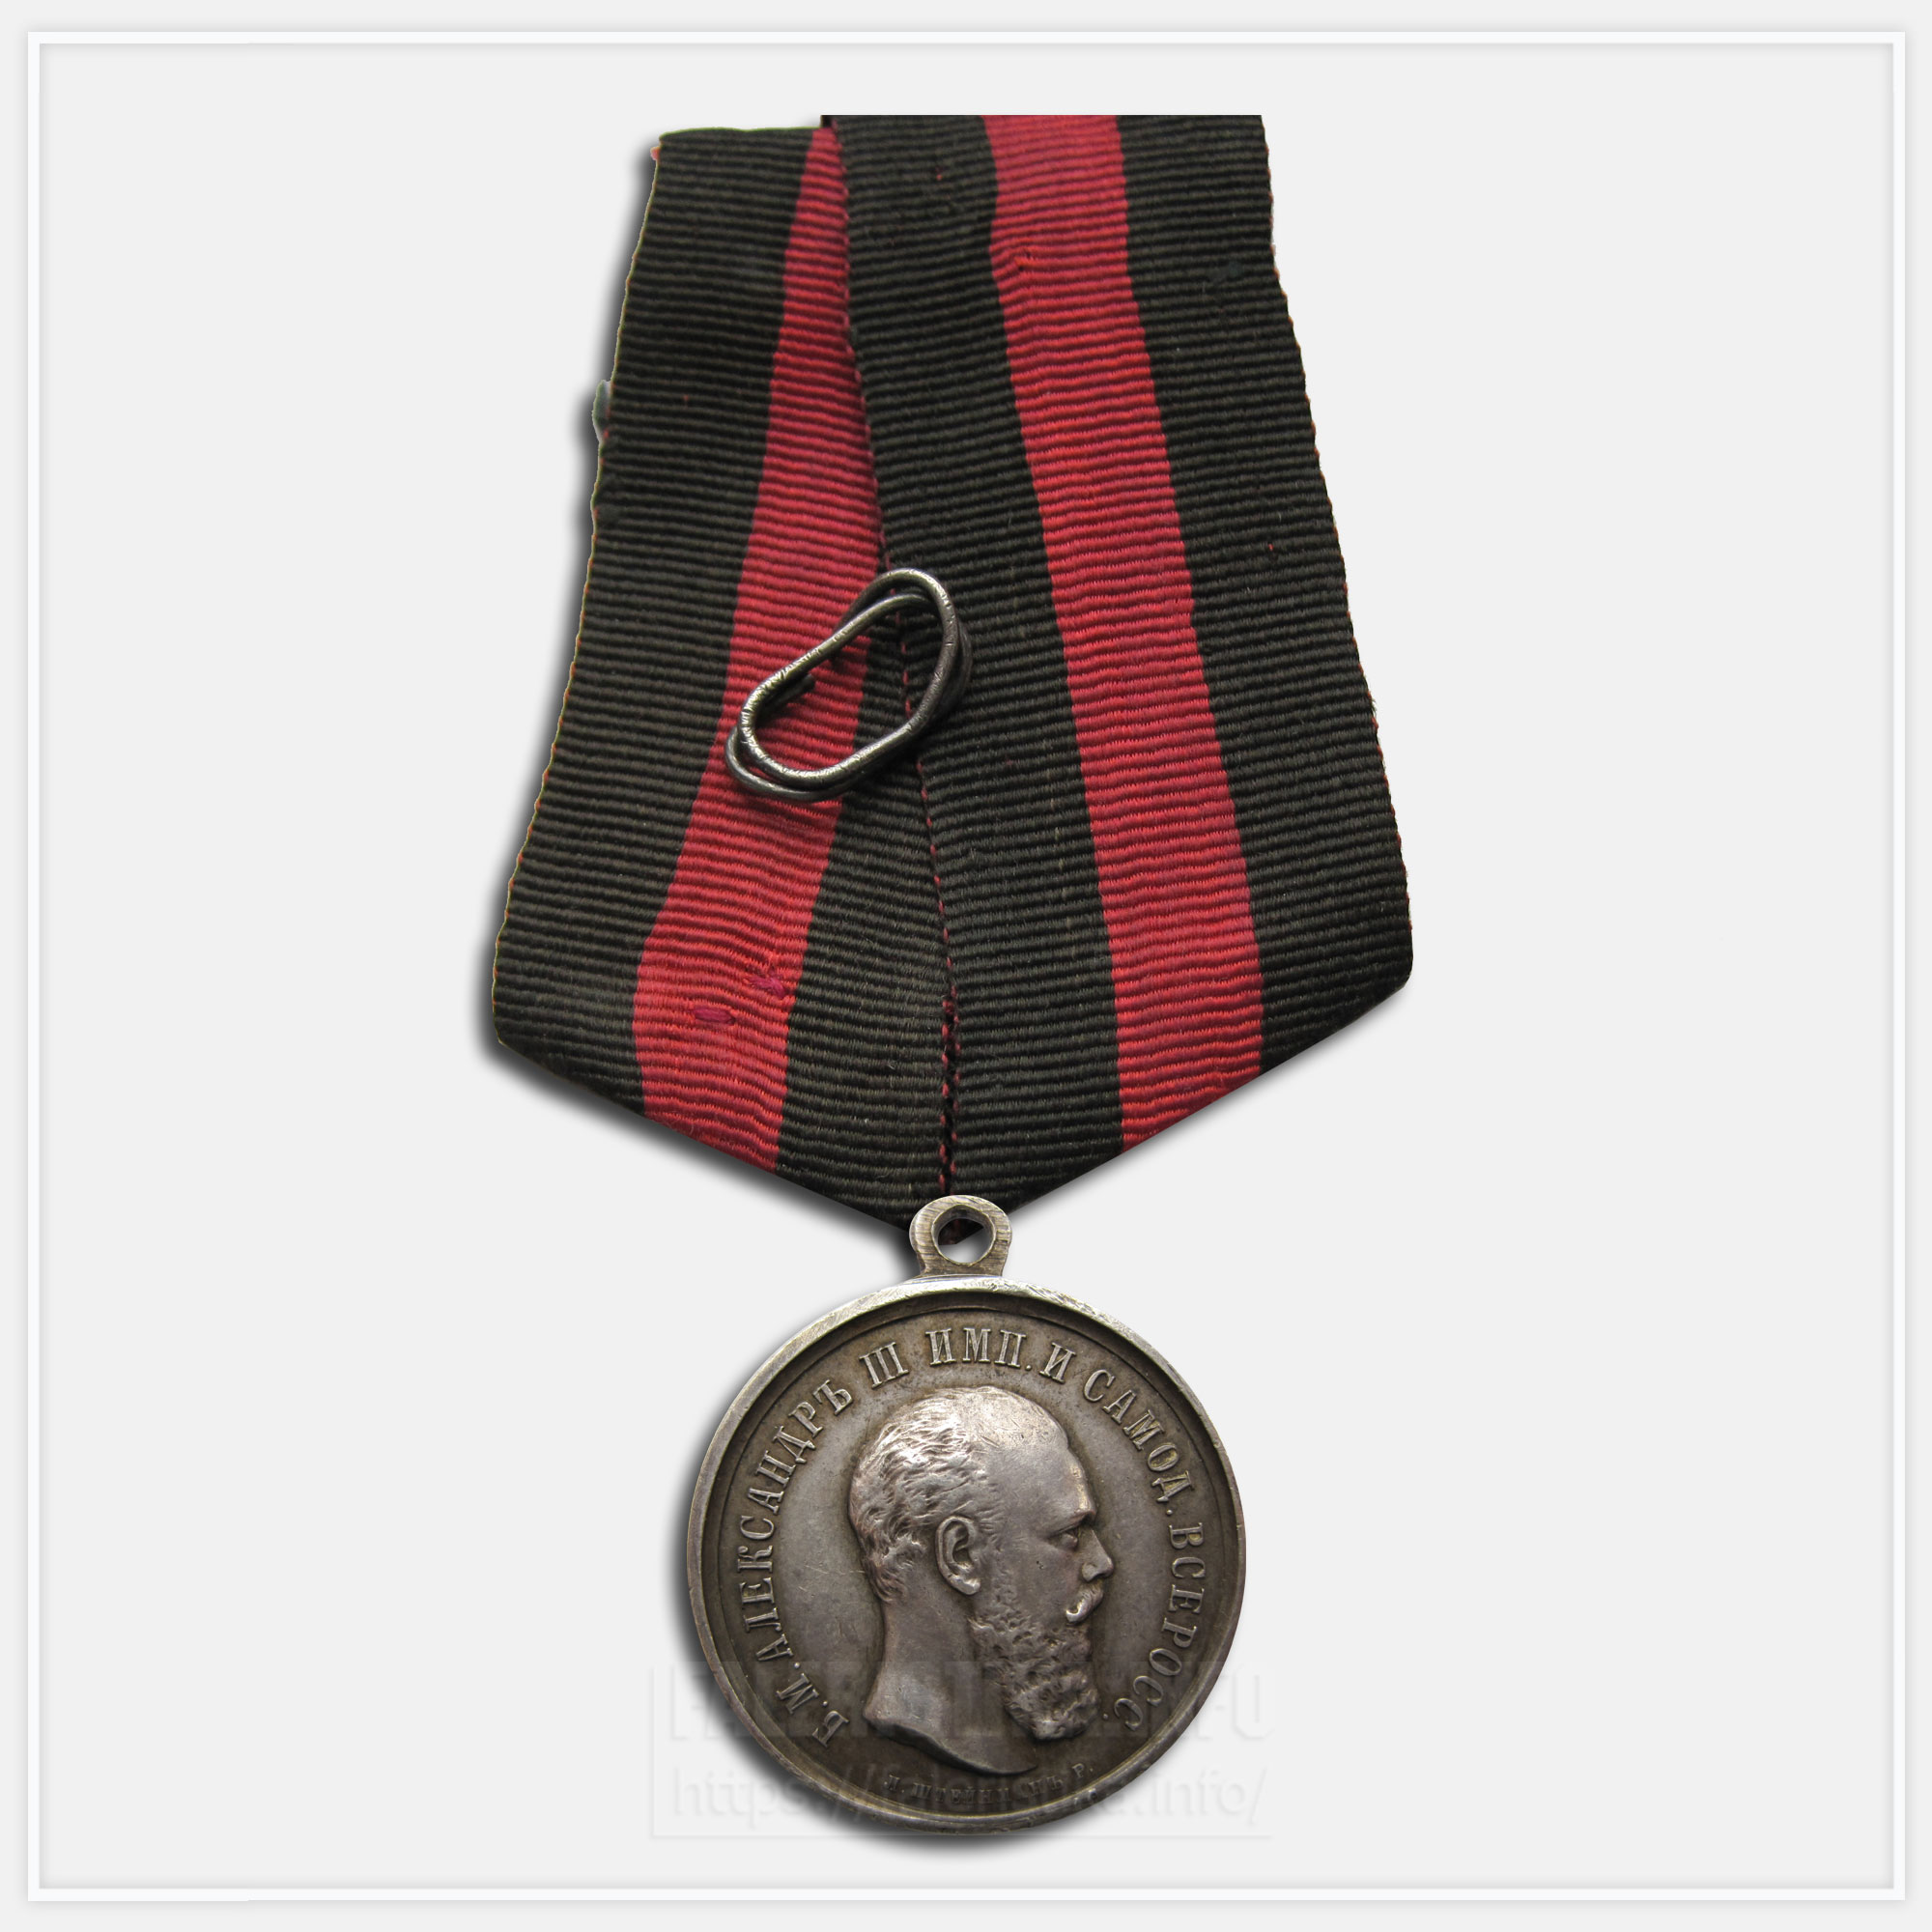 Медаль "За спасение погибавших" Александр III